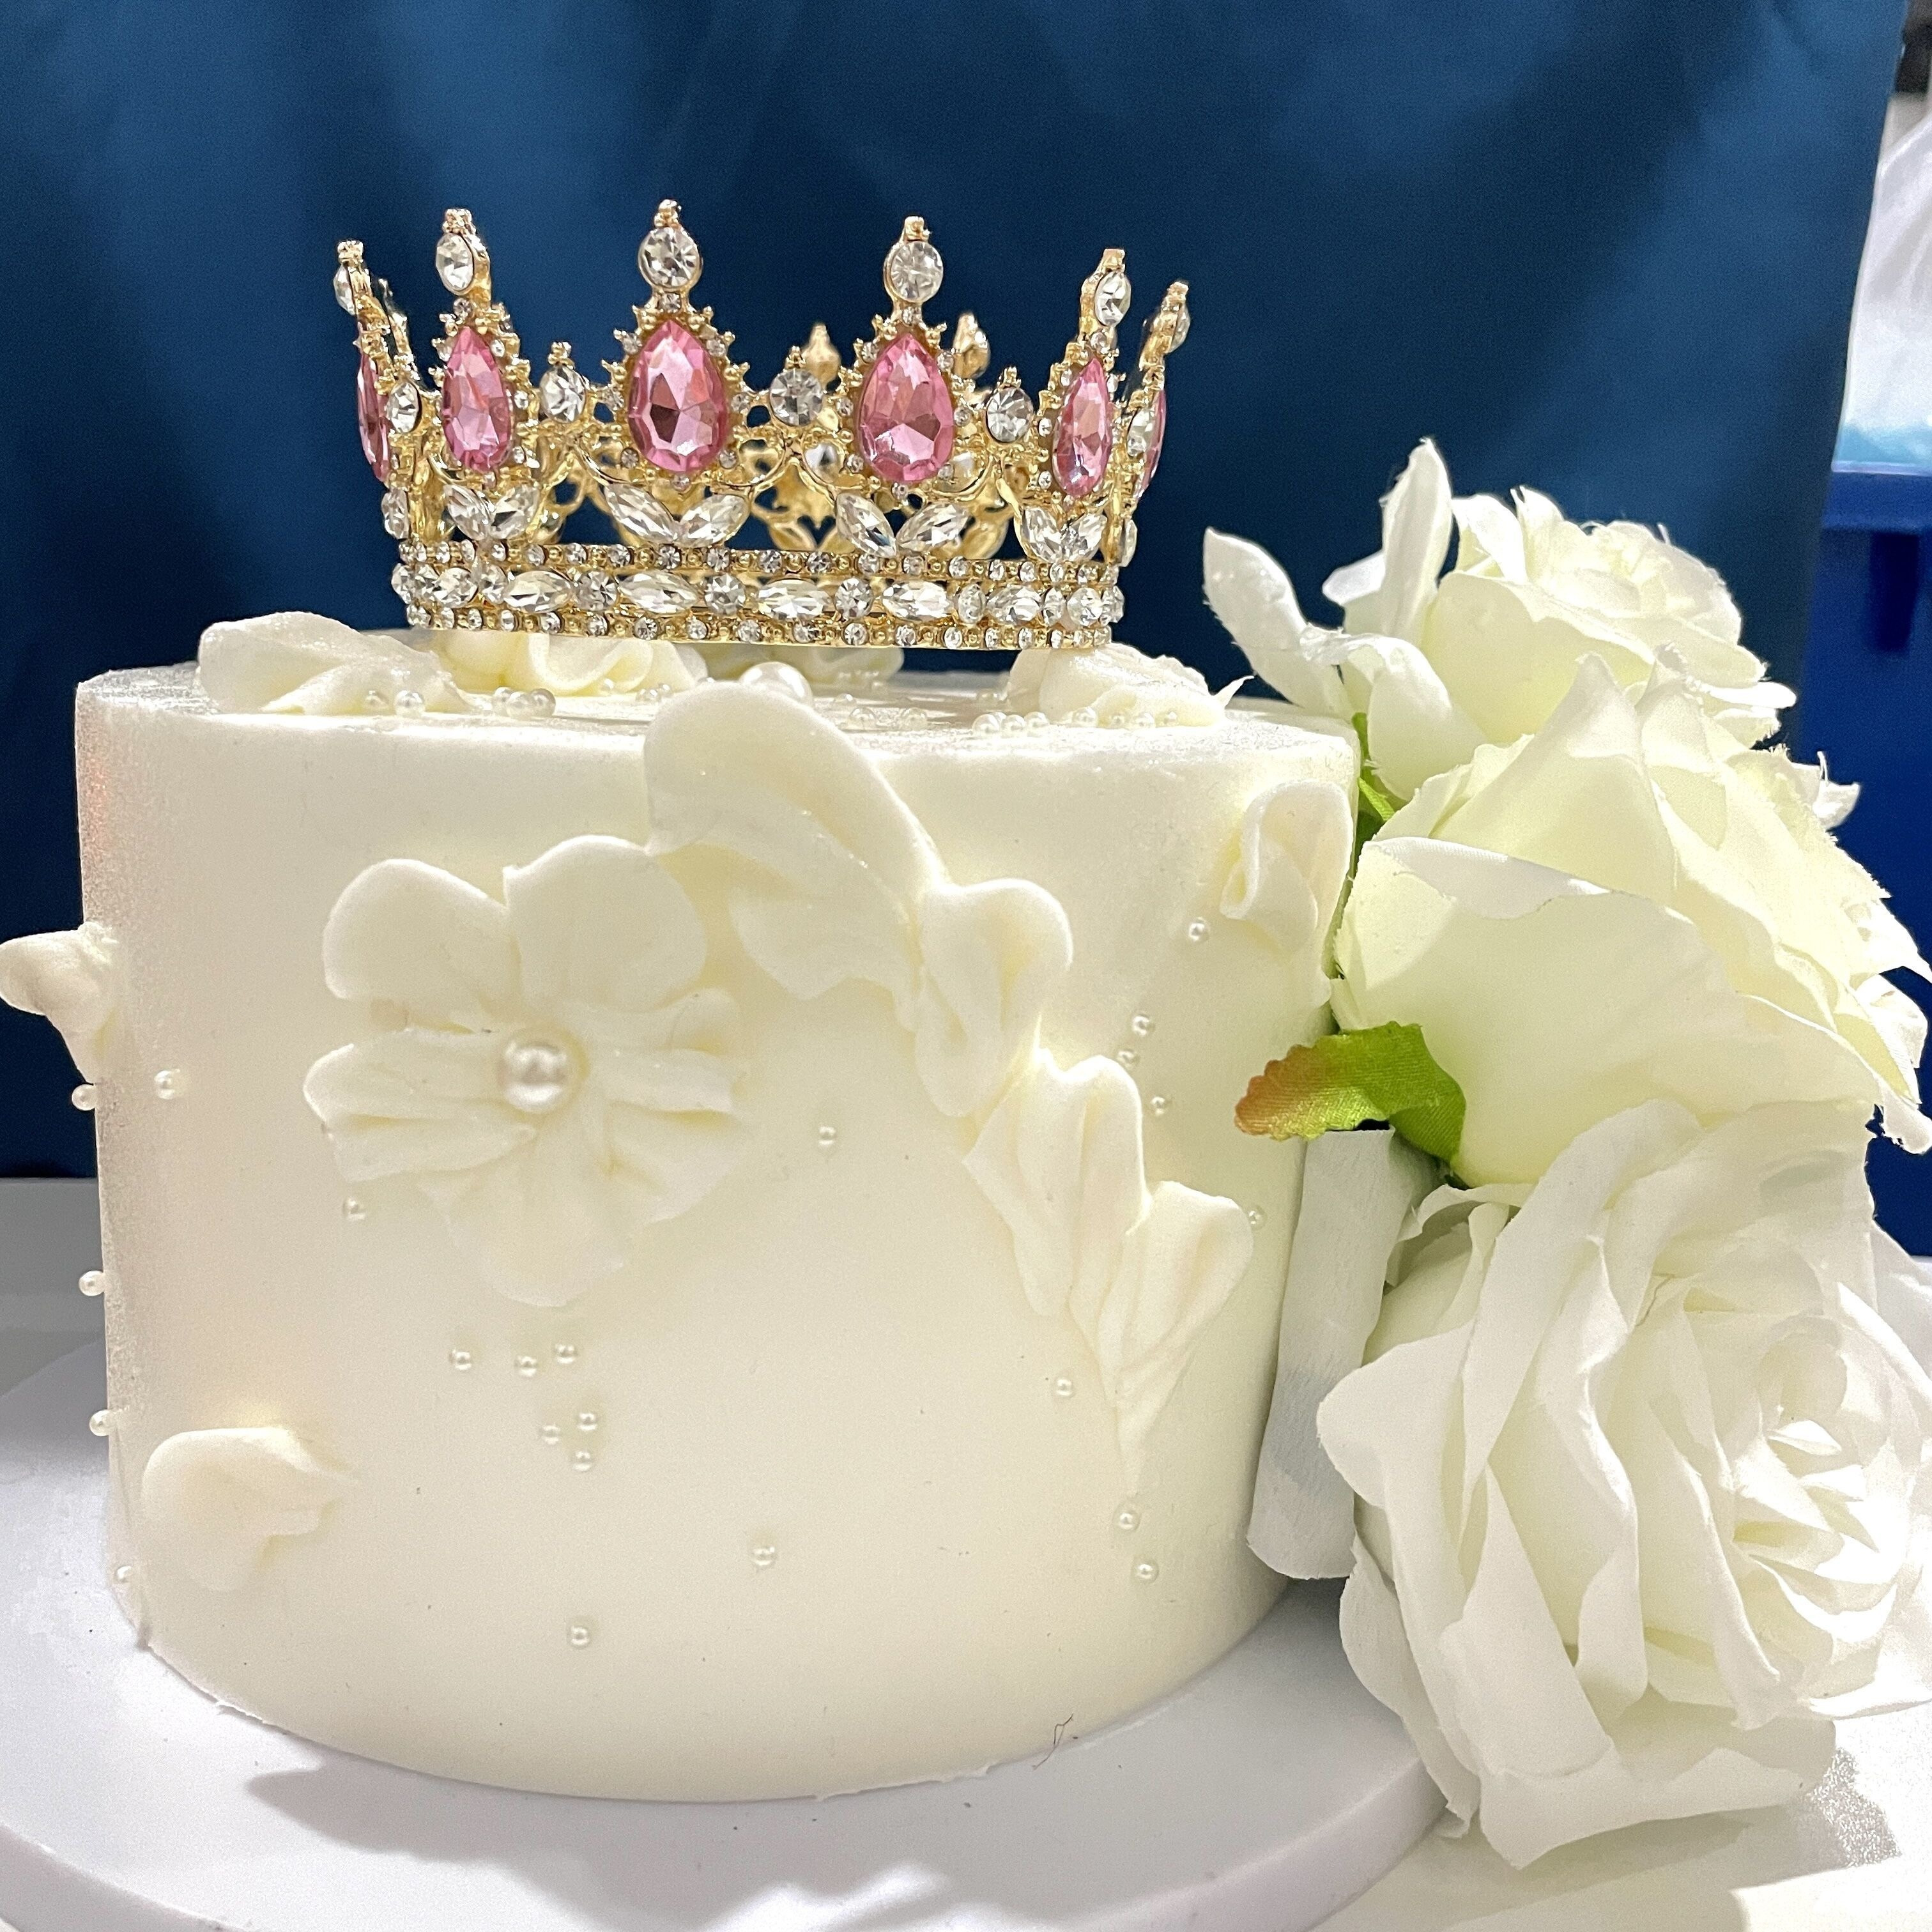 15 piezas de corona para pastel, corona pequeña para decoración de pastel,  mini tiara, corona de cumpleaños, corona de perlas de cristal vintage